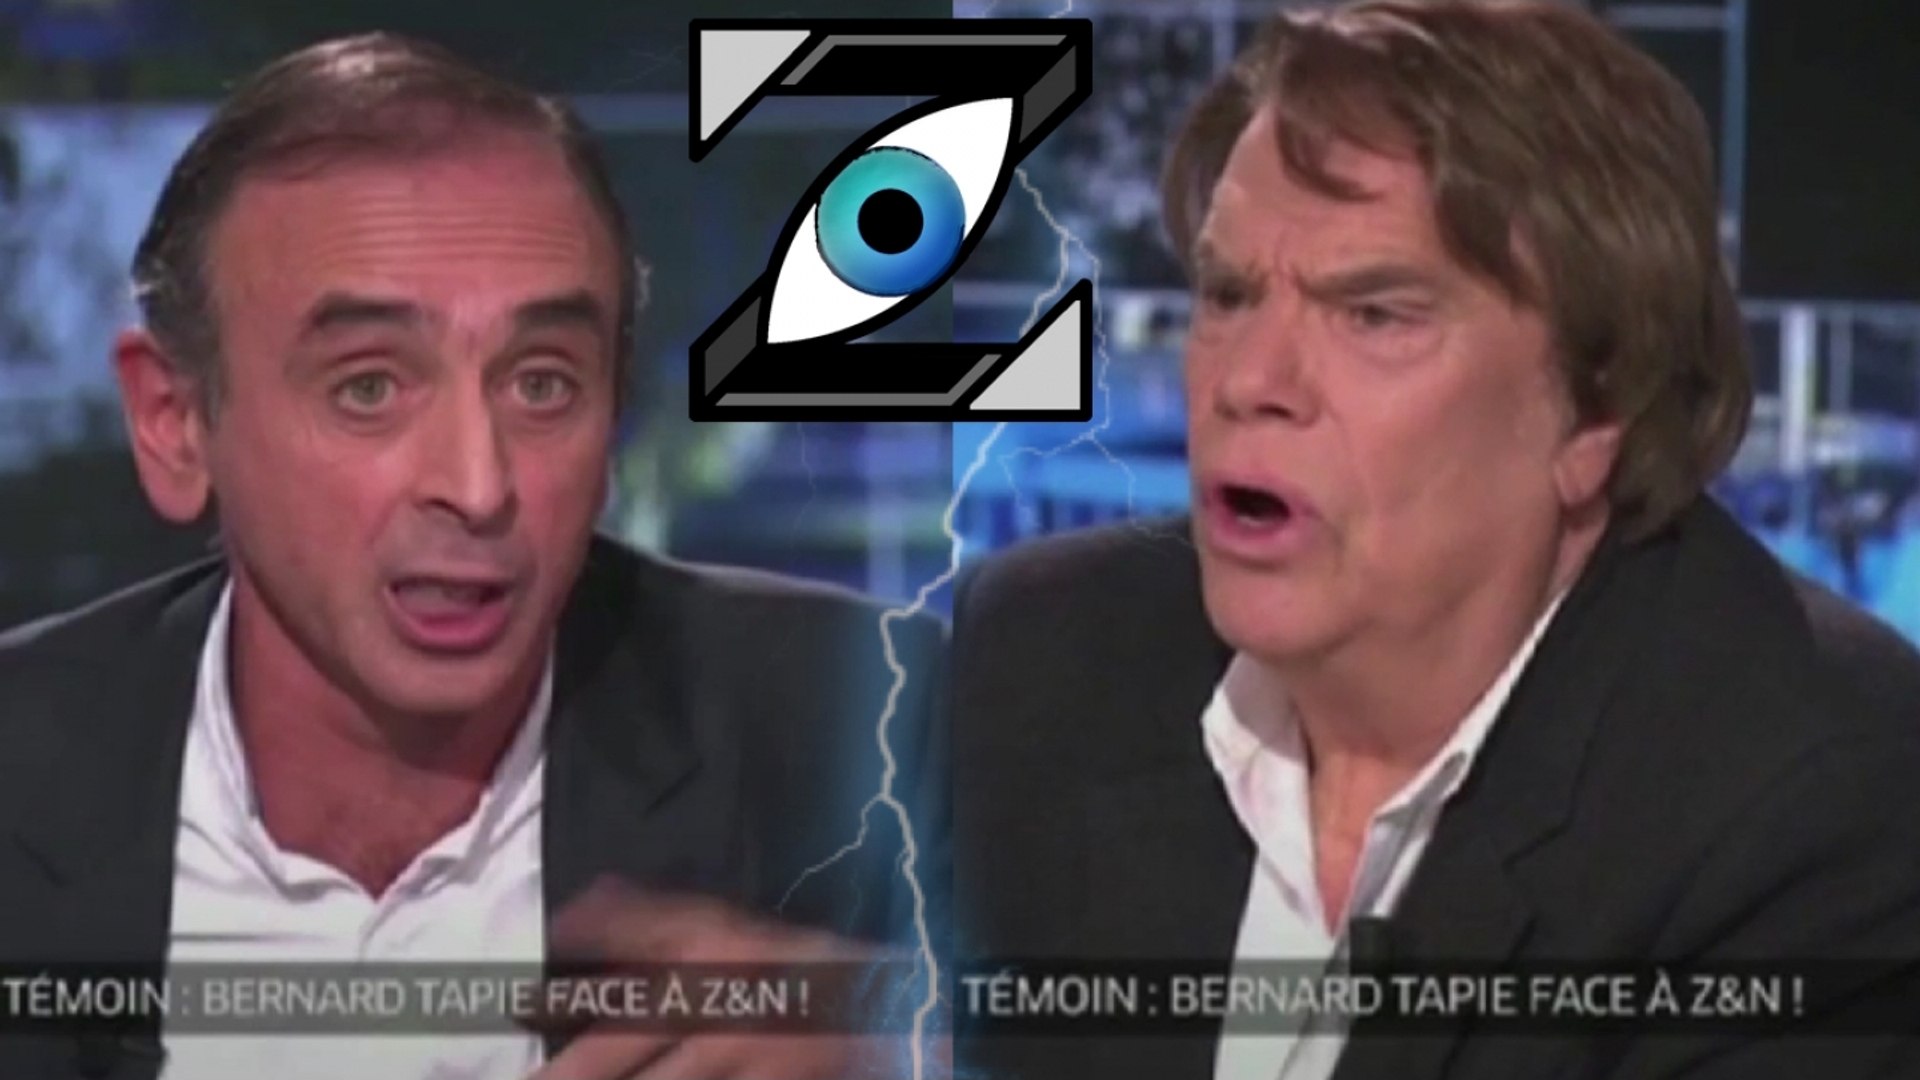 Zap Télé] CLASH "Je vais me lever et t'en mettre une !" - É. Zemmour vs B.  Tapie (15/12/16) - Vidéo Dailymotion